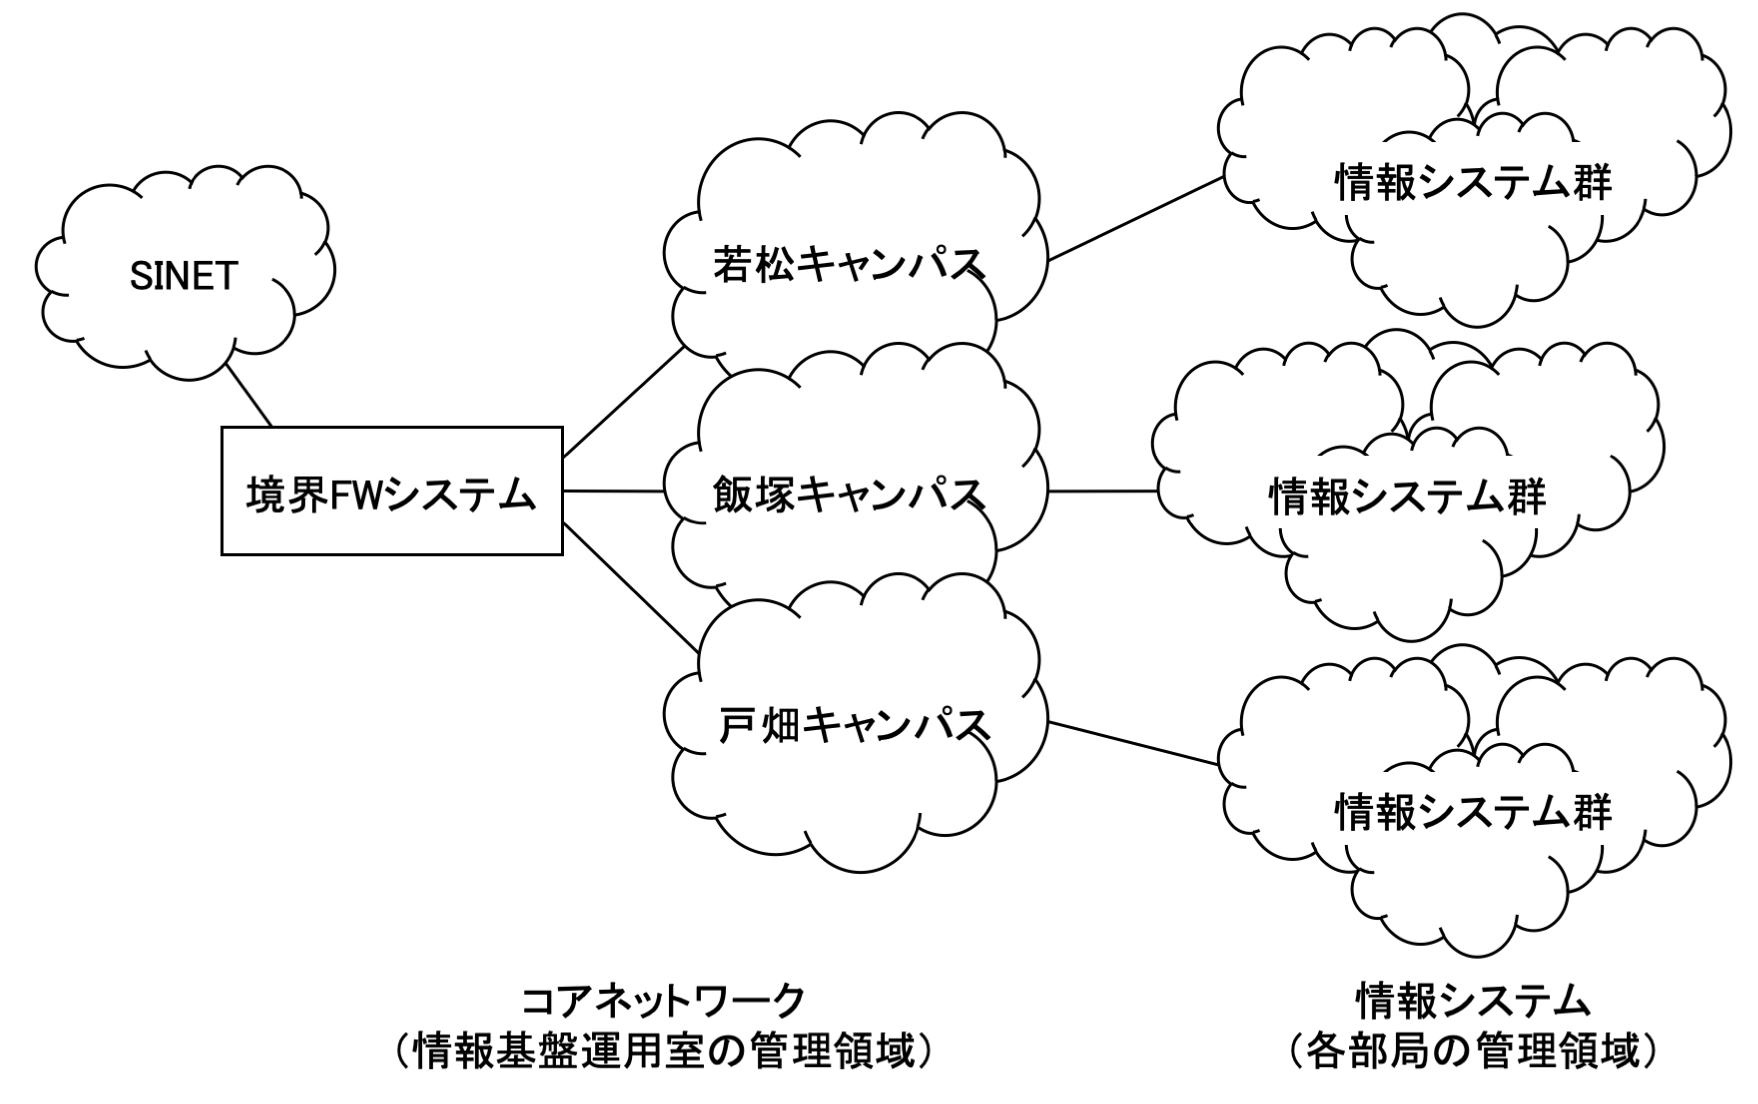 九州工業大学のネットワーク構成